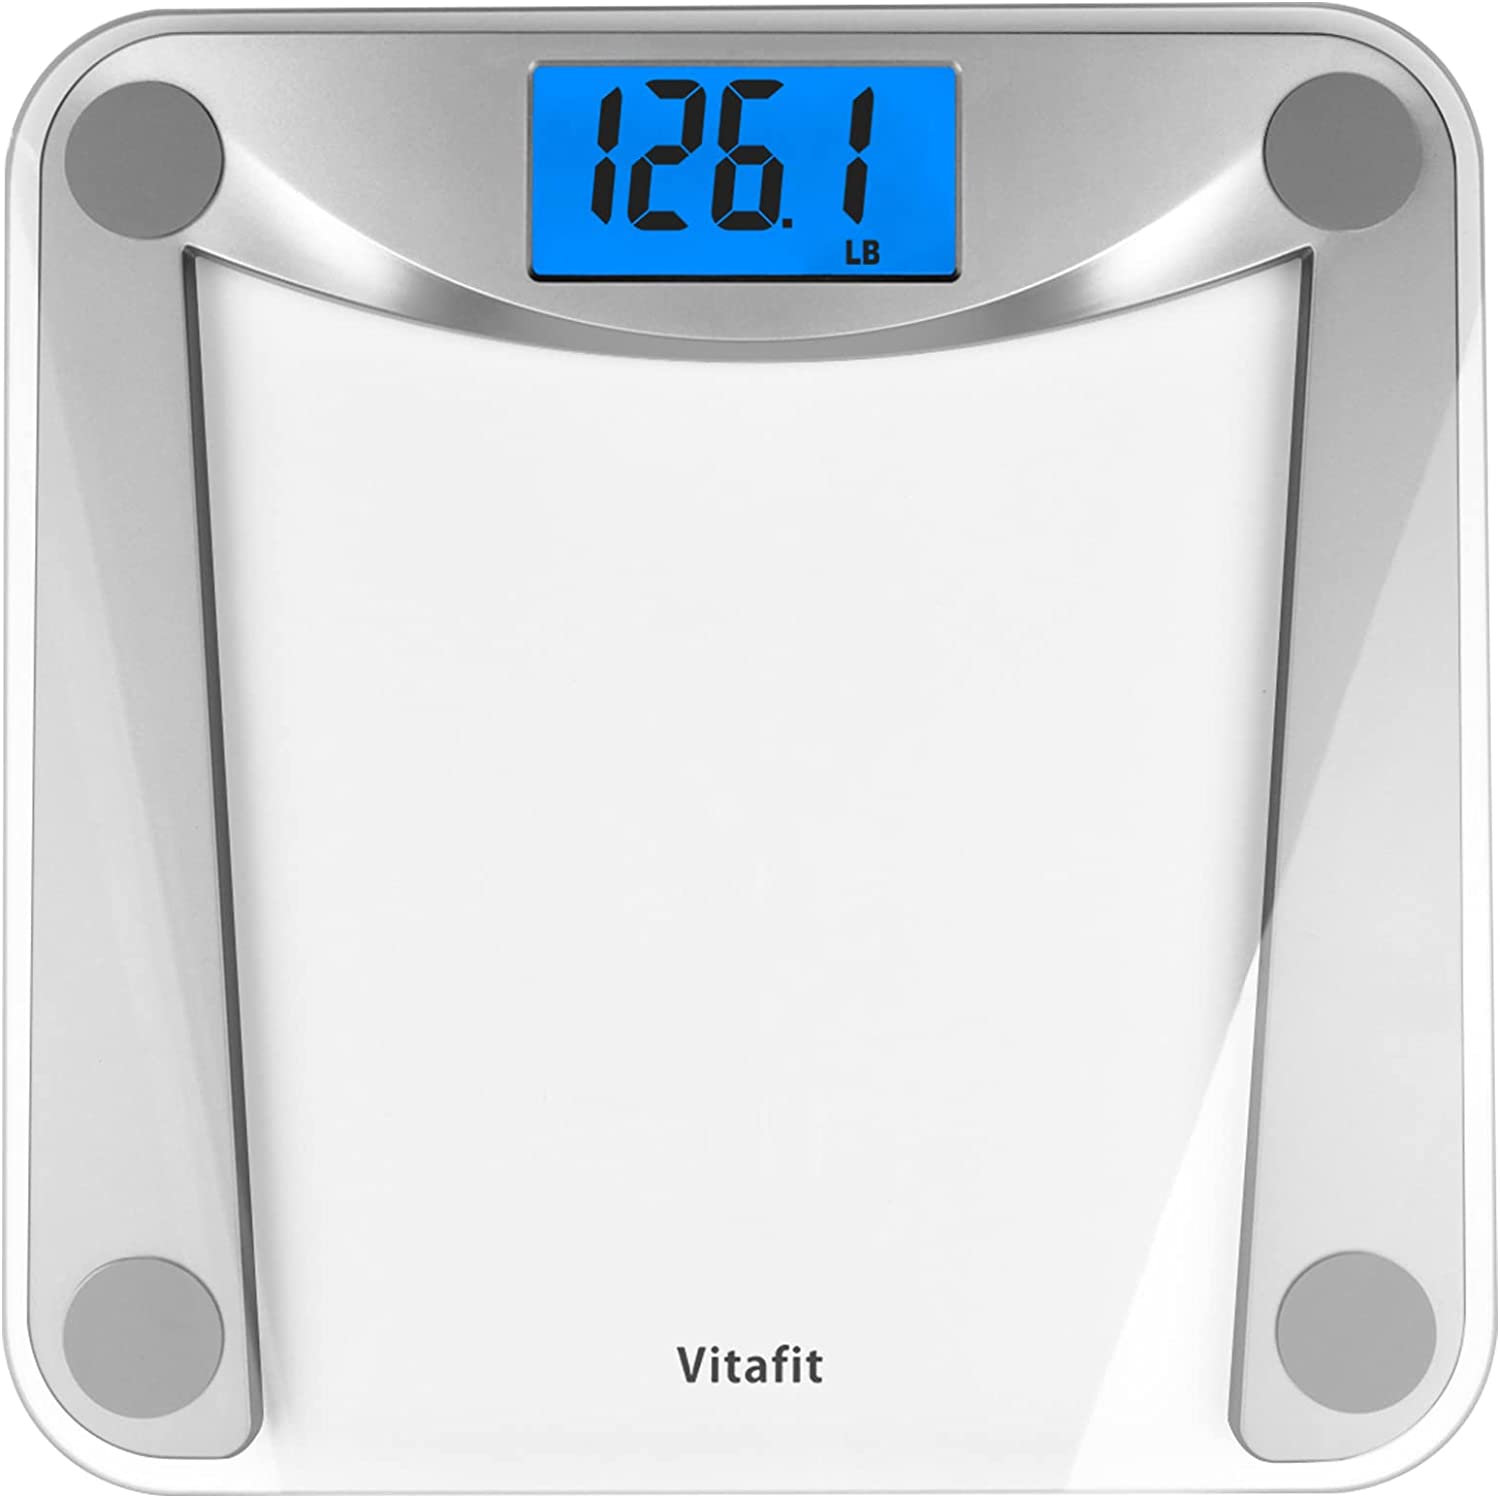 Vitafit Digital Bathroom Scale for Body Weight